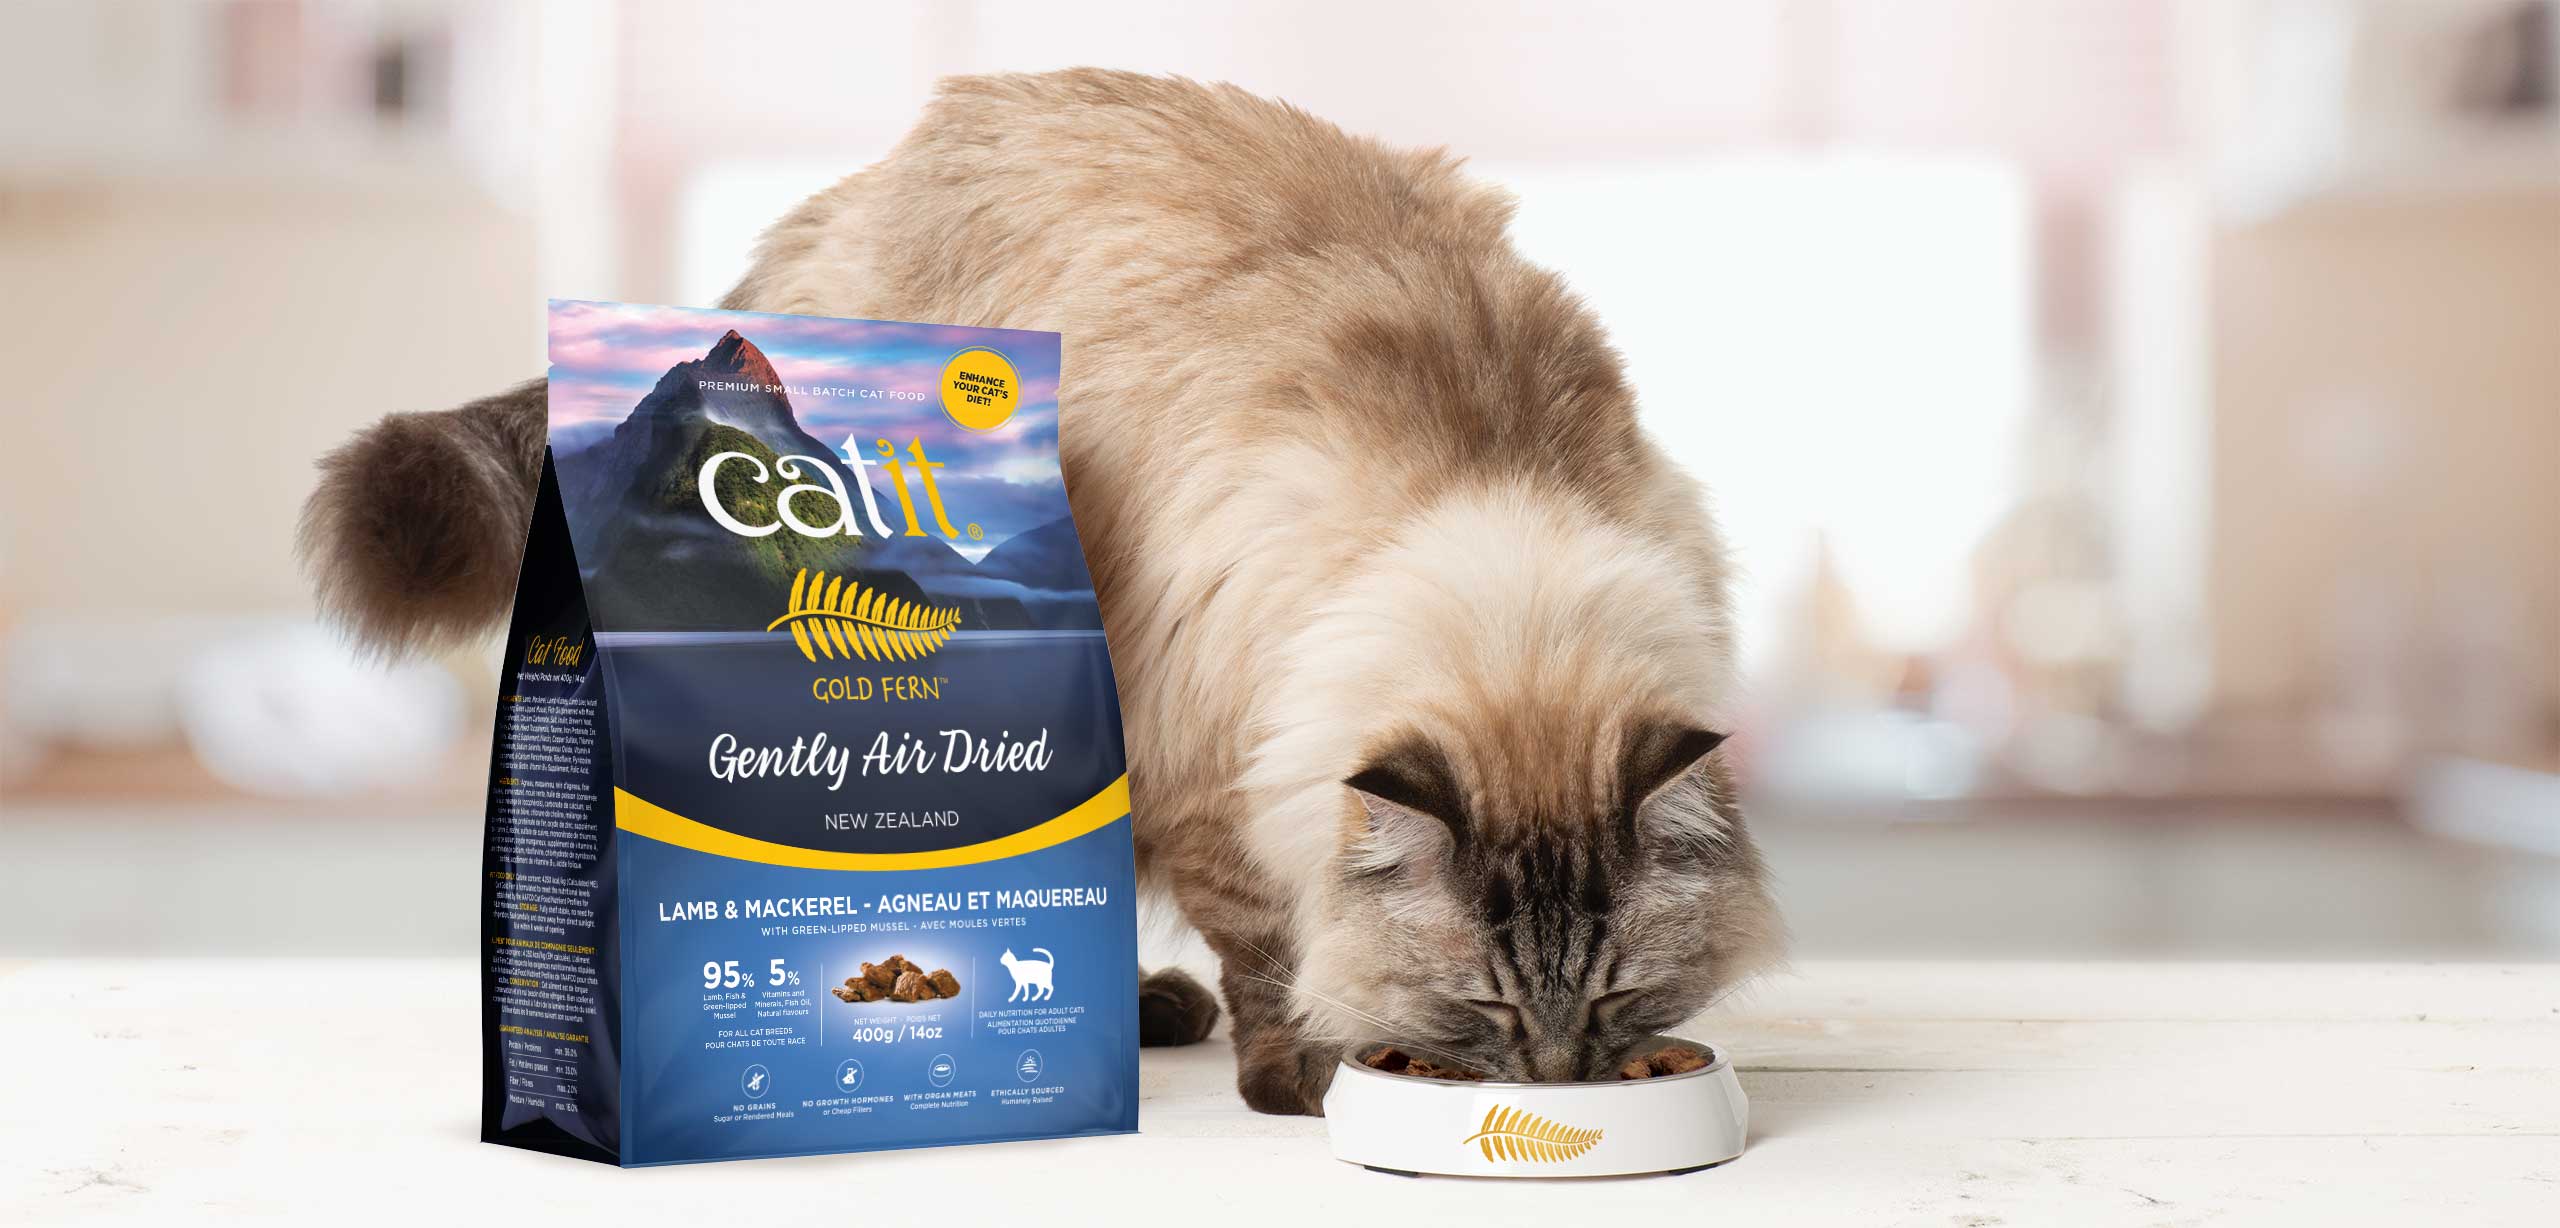 Croquettes sèches avec nutriments bien préservés pour chats pour rehausser l’alimentation de votre félin